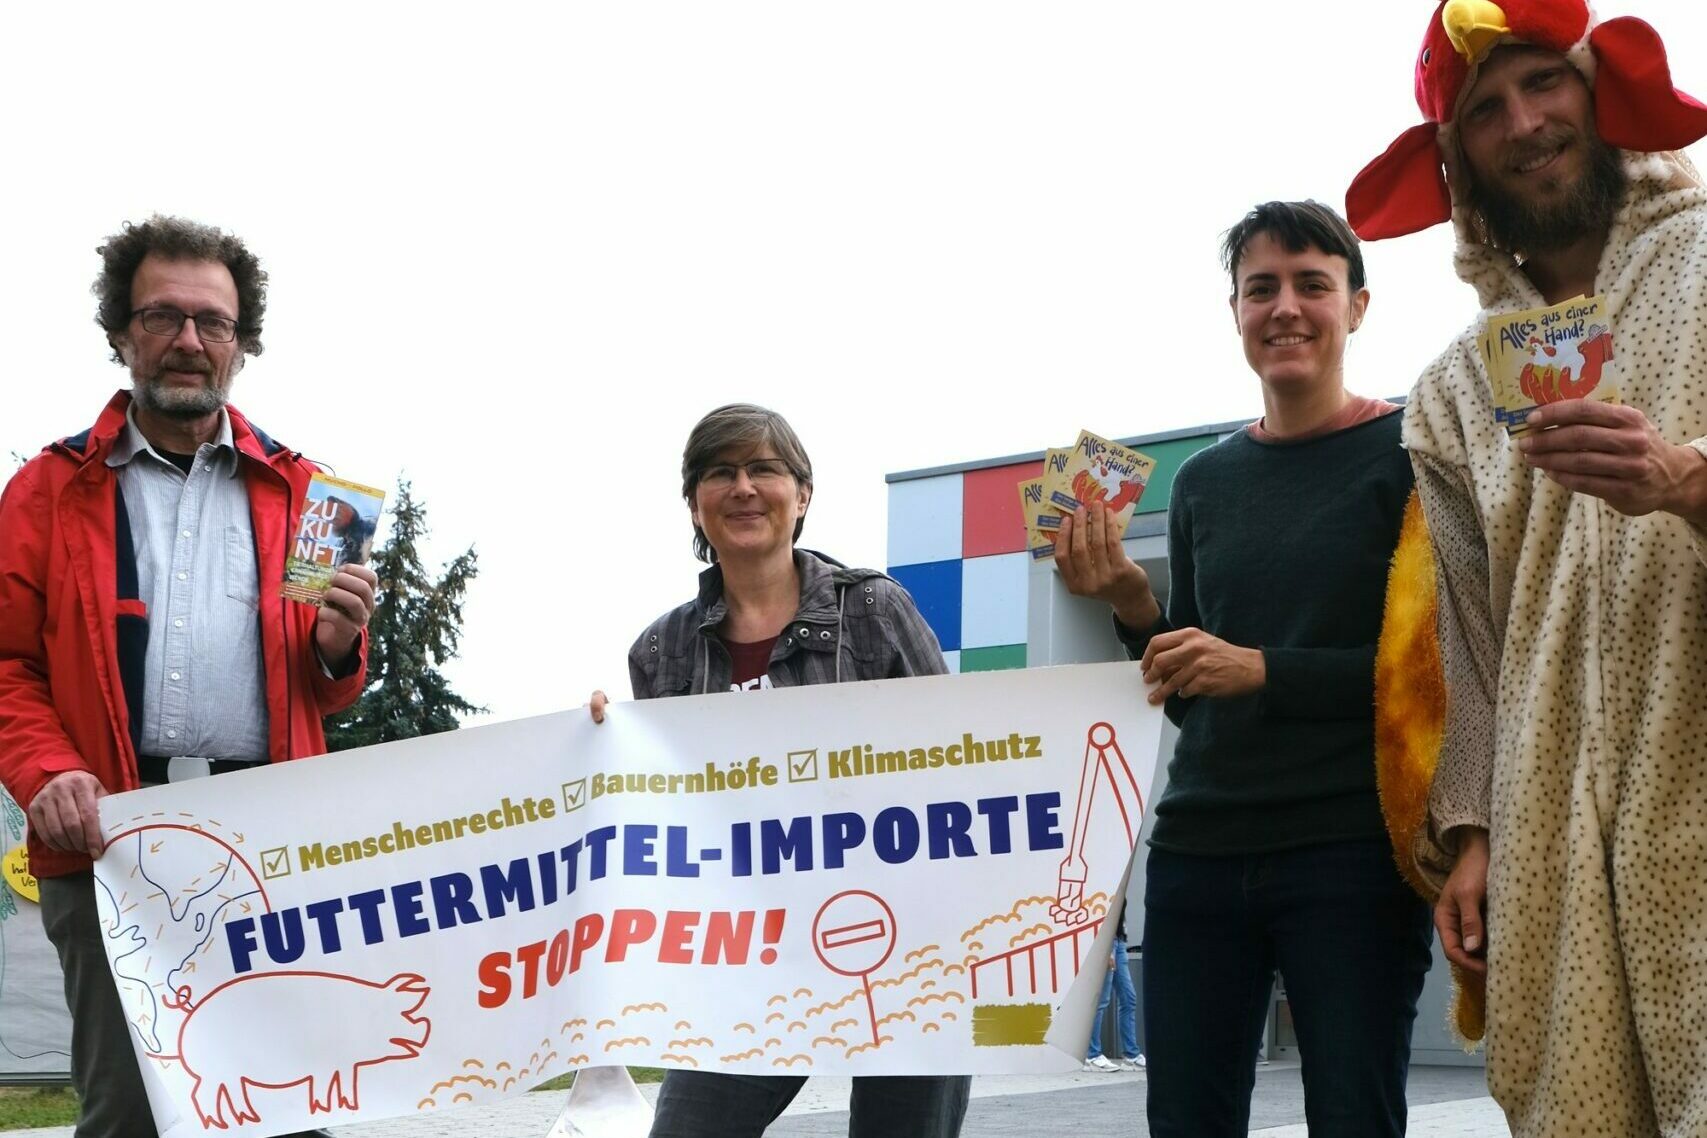 Aktion Agrar Team mit Banner "Futtermittel-Importe stoppen"